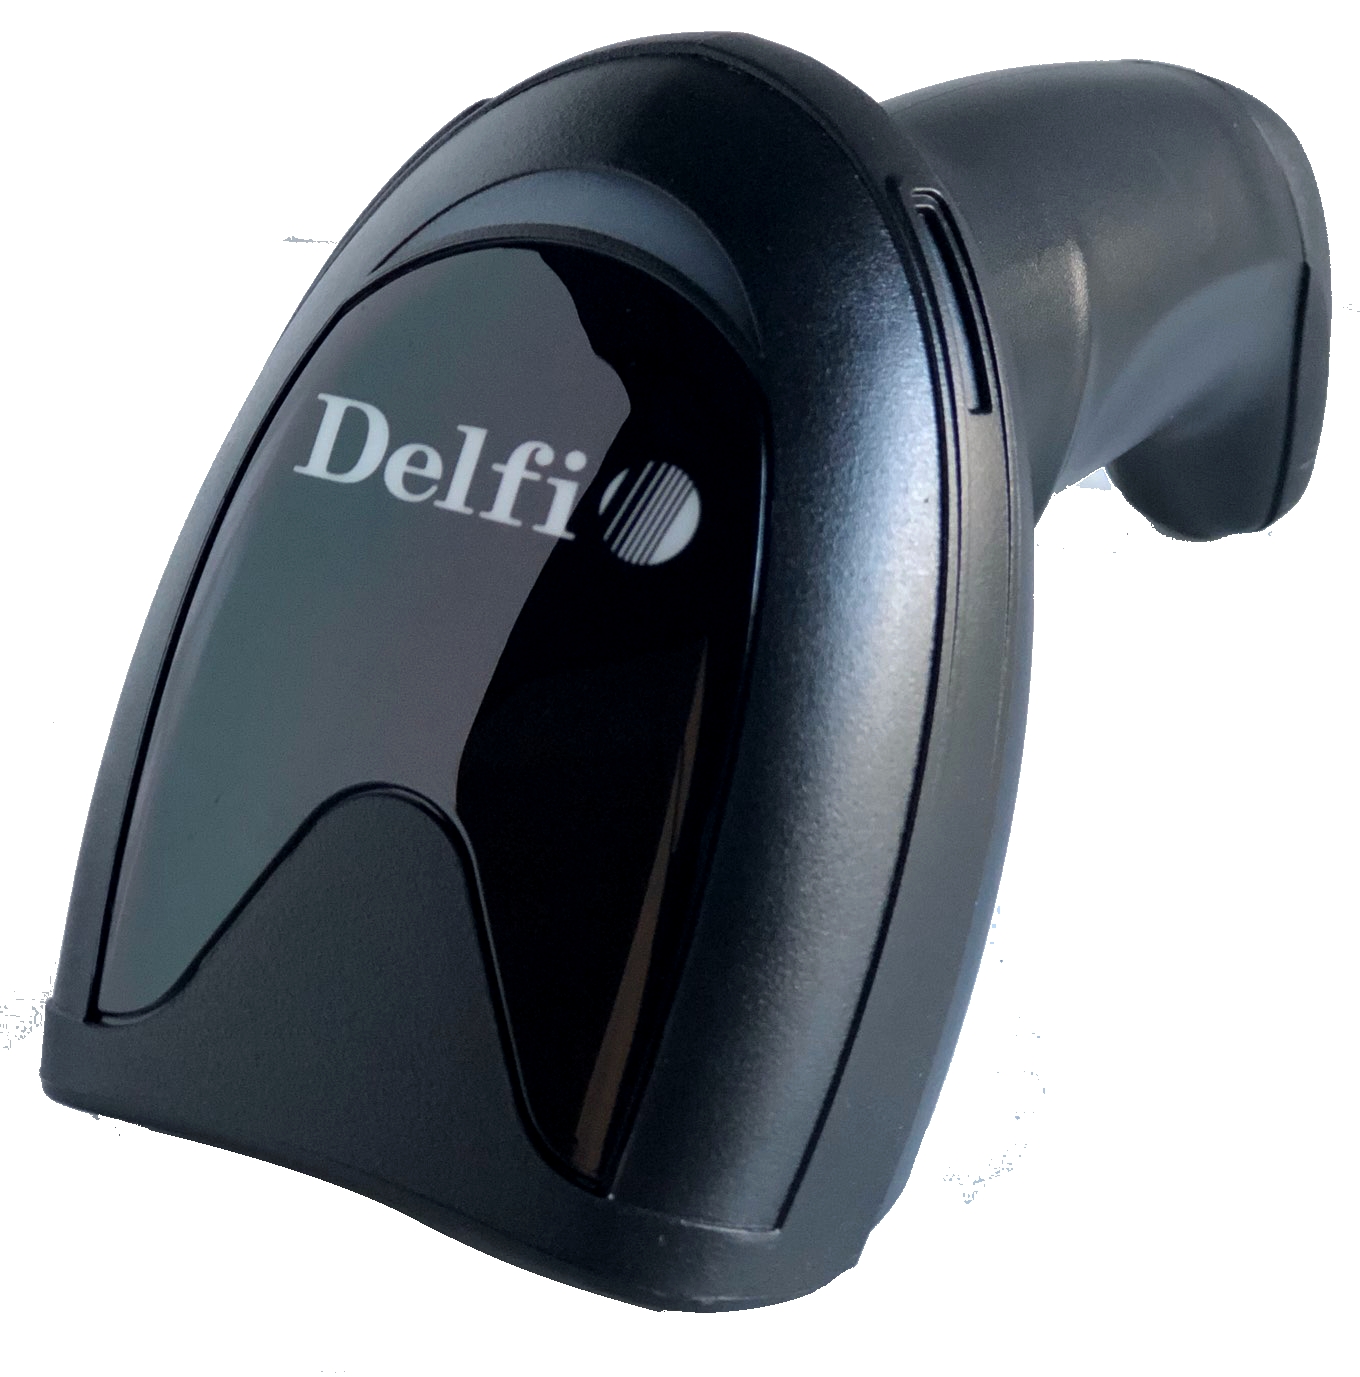 Mã Vạch Delfi - Công Ty TNHH Delfi Technologies